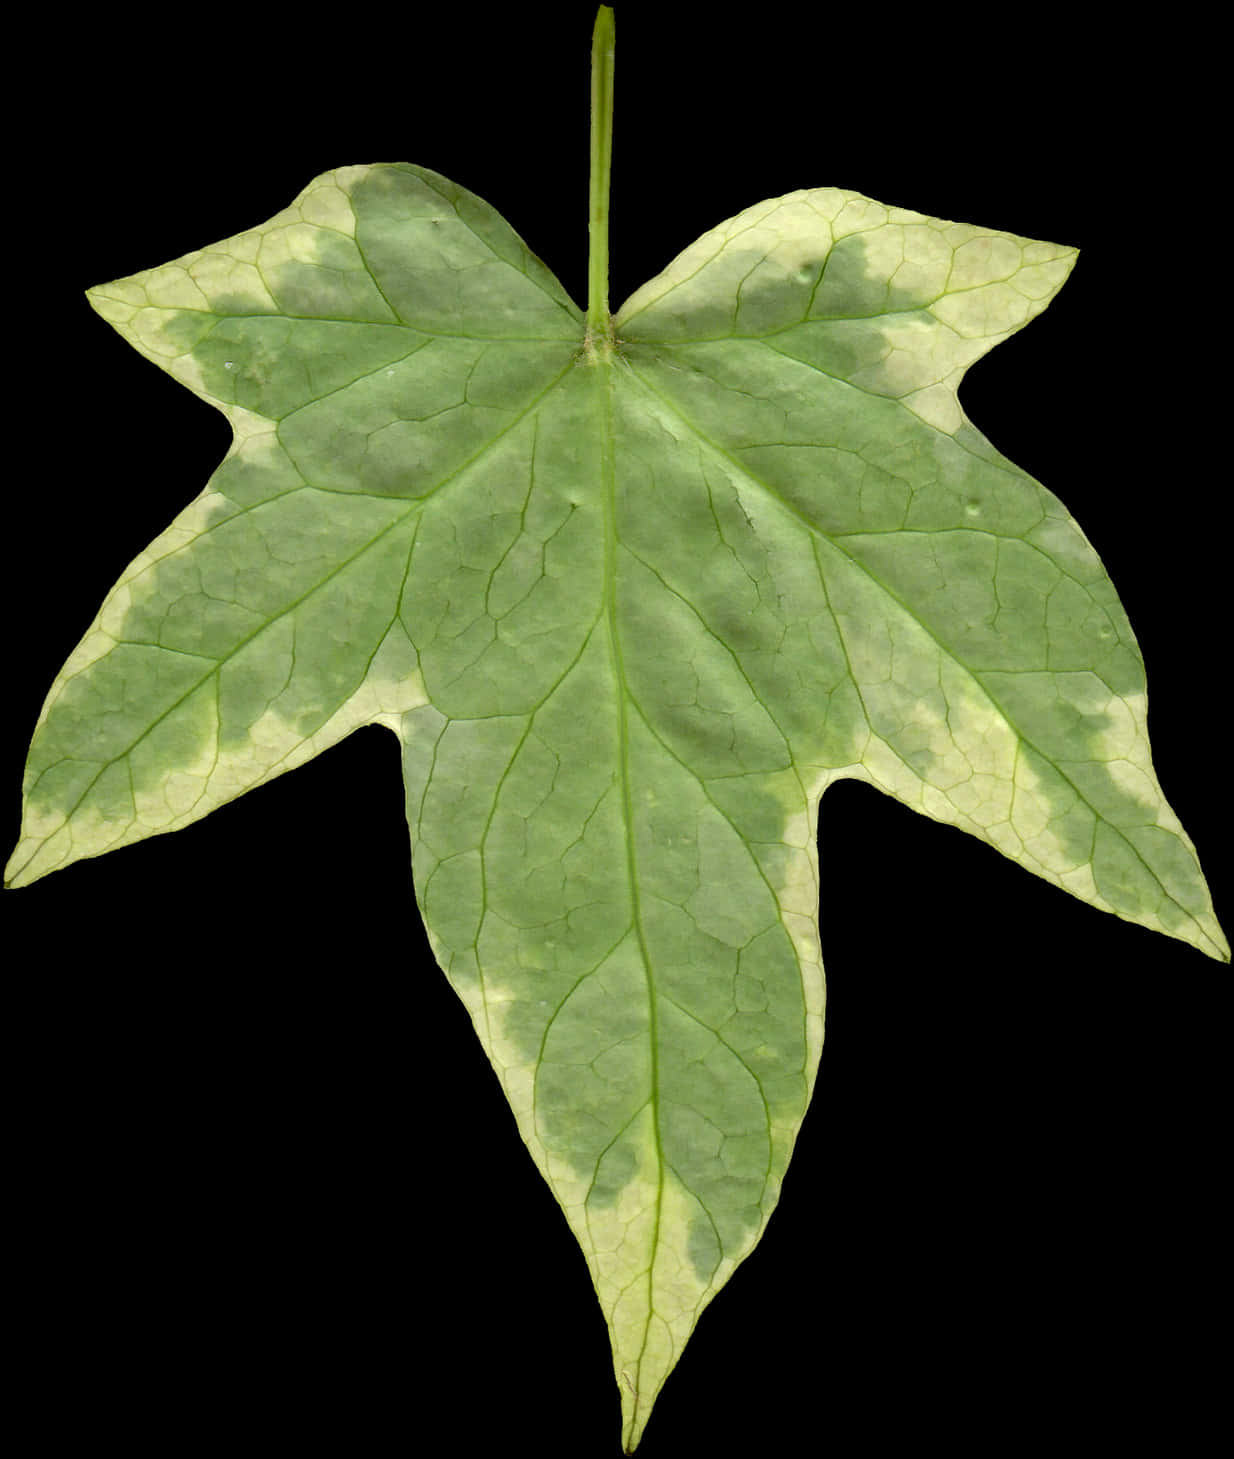 Green Leaf Black Background PNG